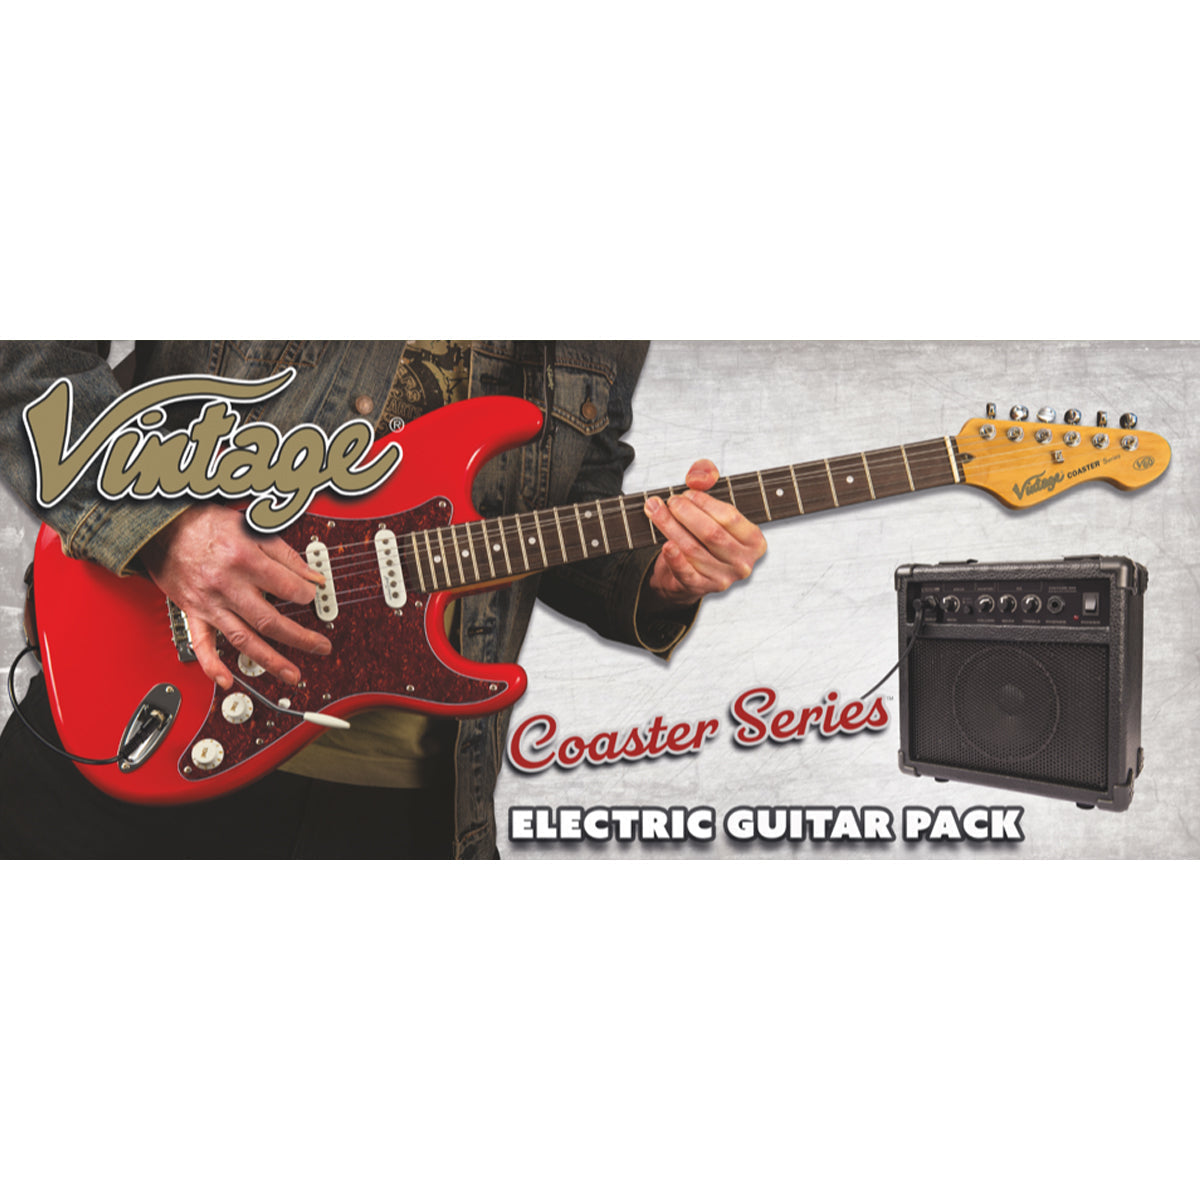 Vintage V60 Coaster Series Electric Guitar Pack ~ Vintage White, Electric Guitar for sale at Richards Guitars.